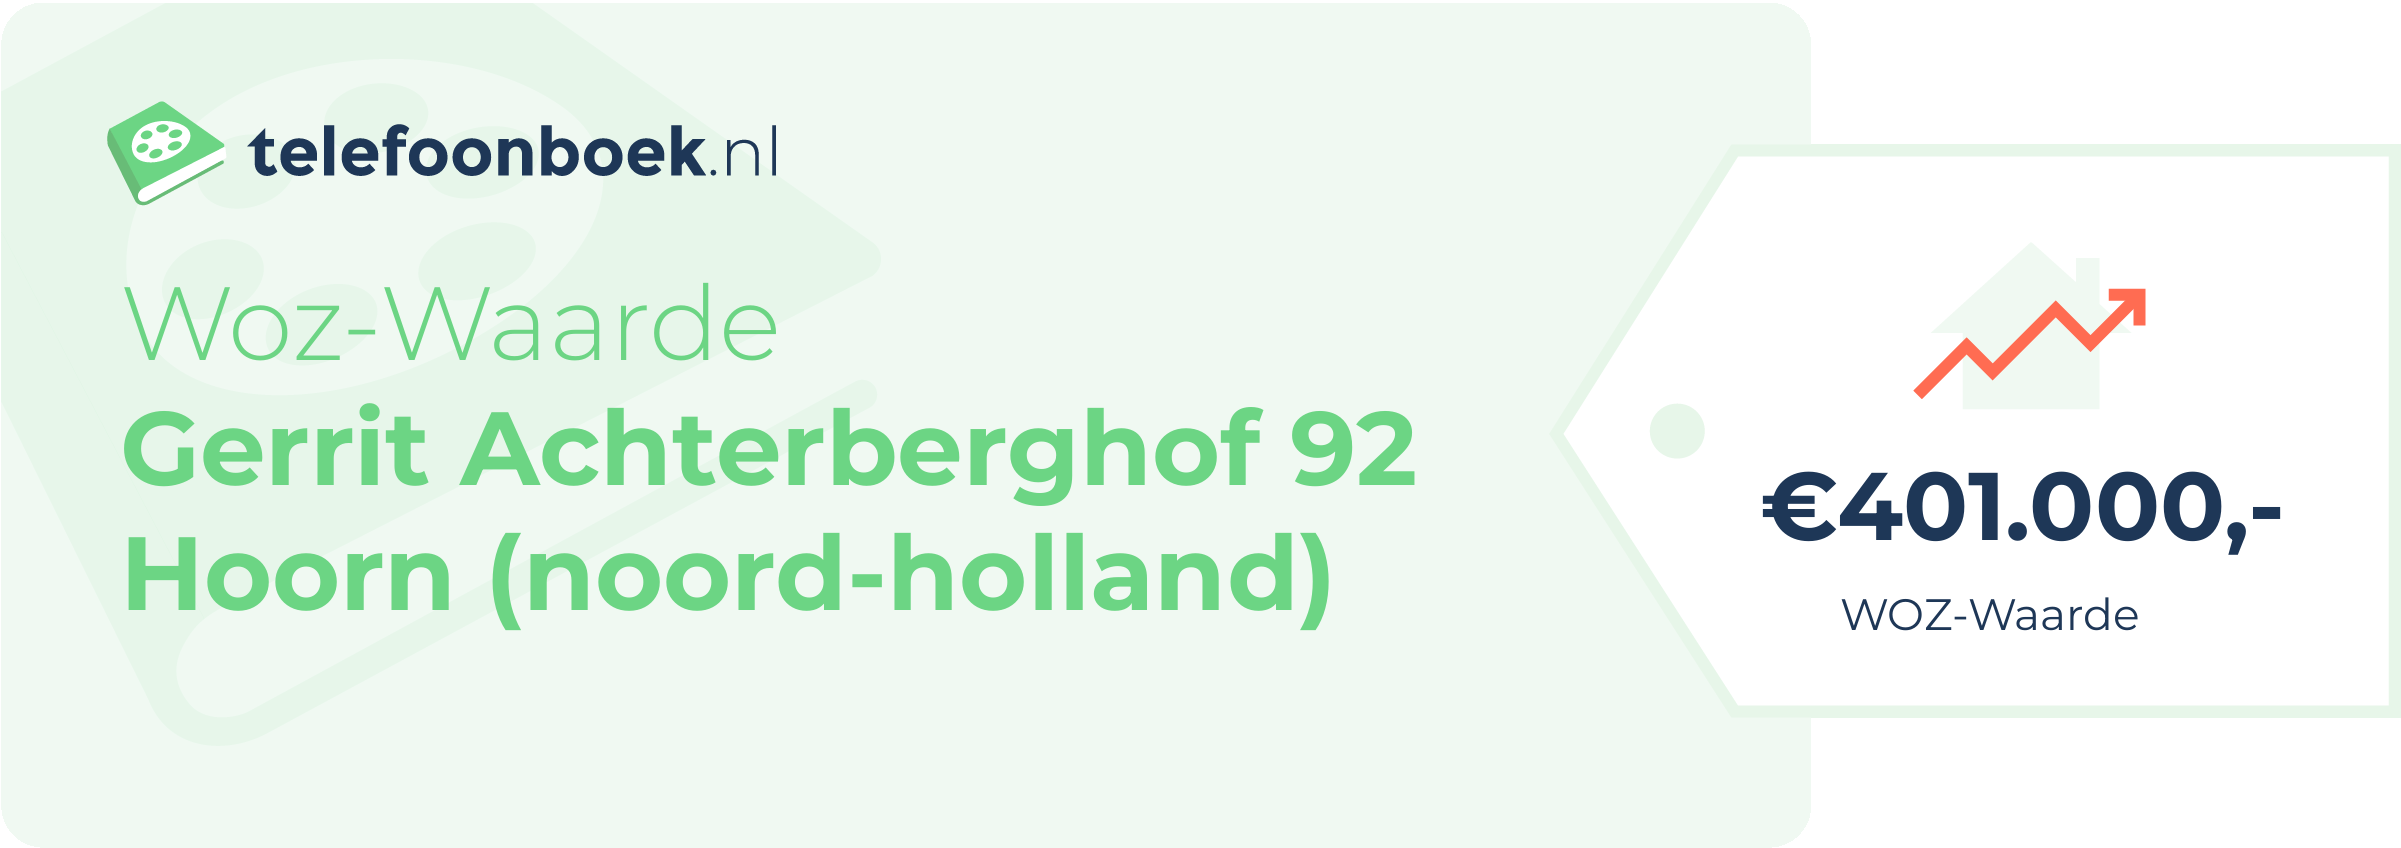 WOZ-waarde Gerrit Achterberghof 92 Hoorn (Noord-Holland)